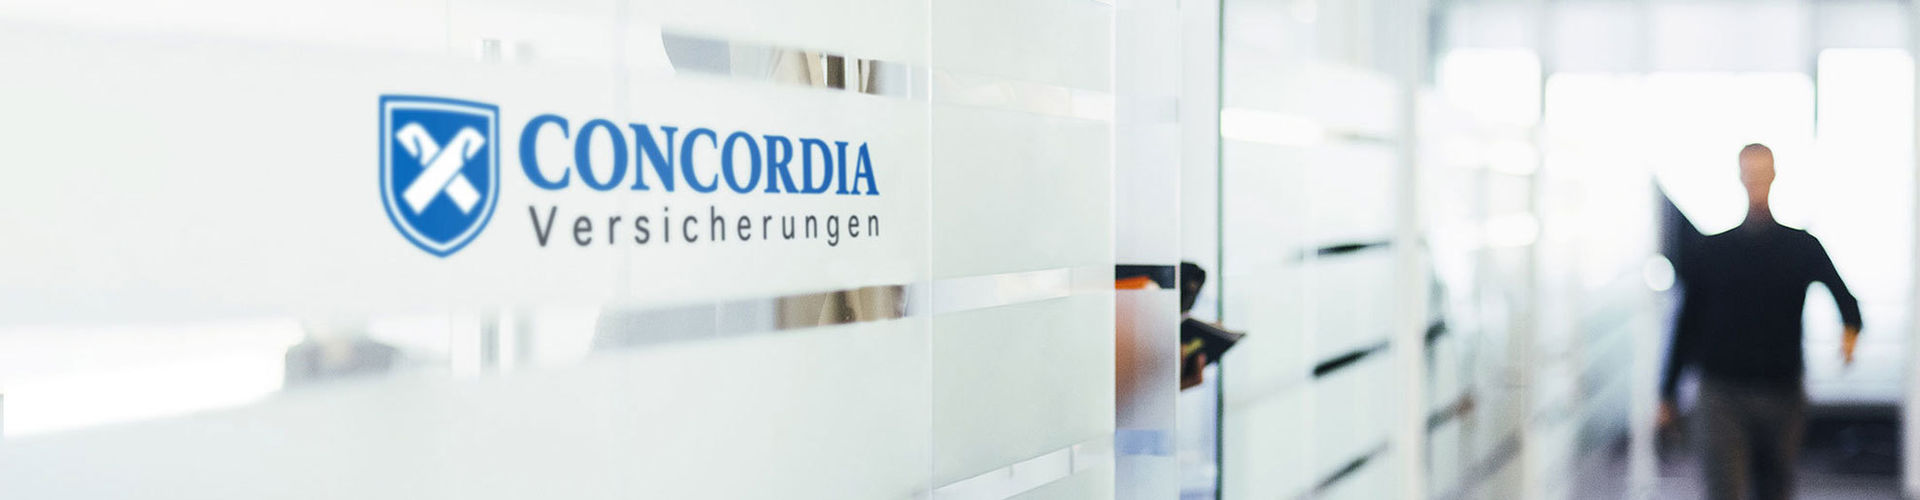 Glasfront eines Concordia Versicherung Büros